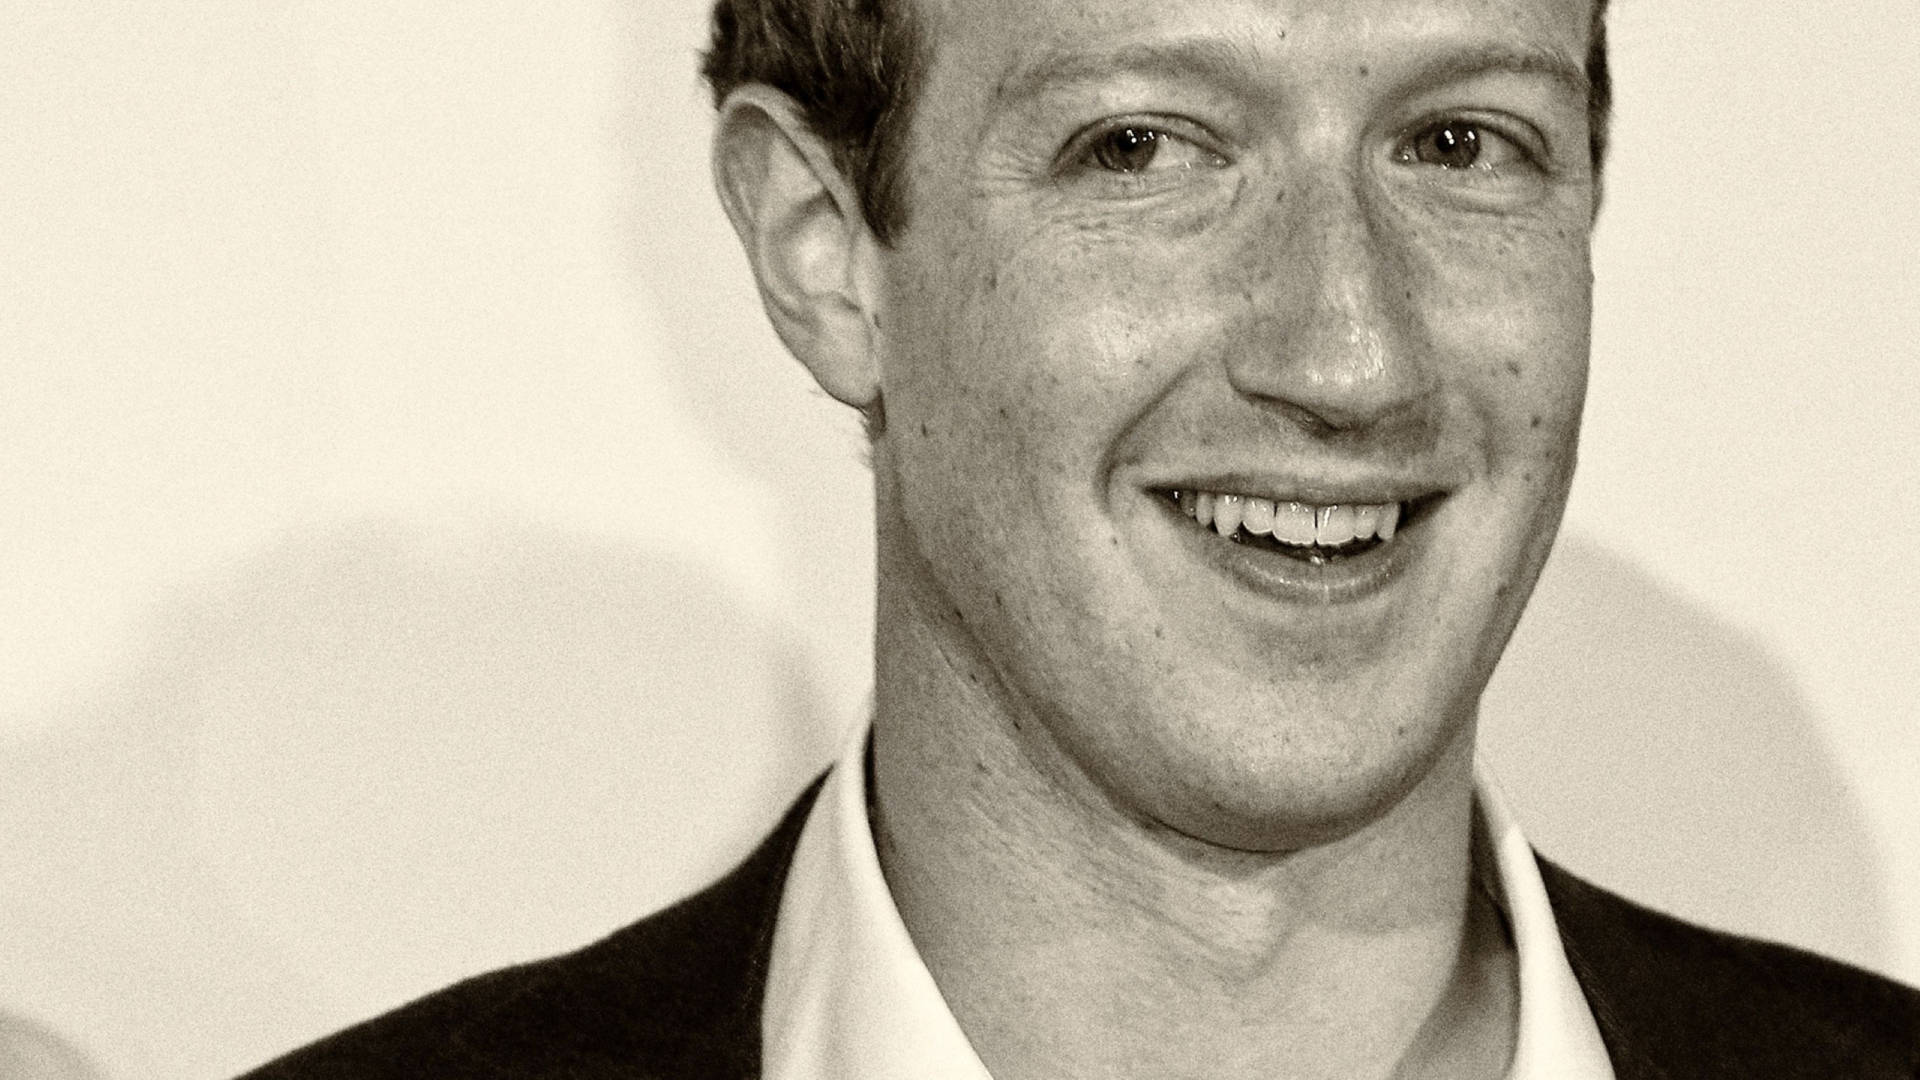 Monokrom portræt af Mark Zuckerberg for et moderne og minimalistisk udseende. Wallpaper